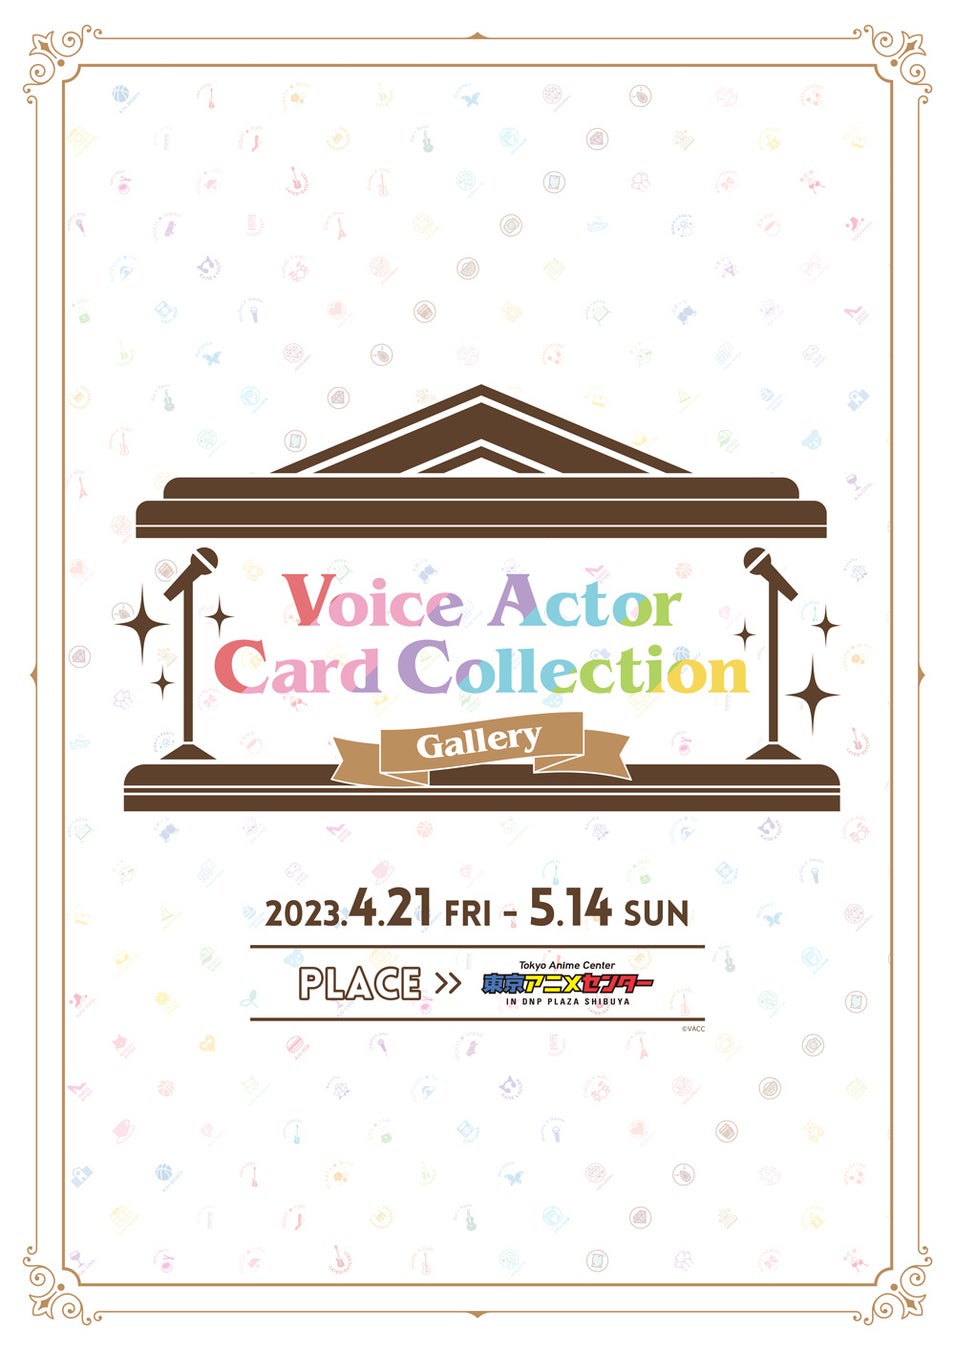 明日4月21日(金)より東京アニメセンターにて『Voice Actor Card Collection Gallery』いよいよ開催！伊藤彩沙さんがオフィシャルサポーターに就任！